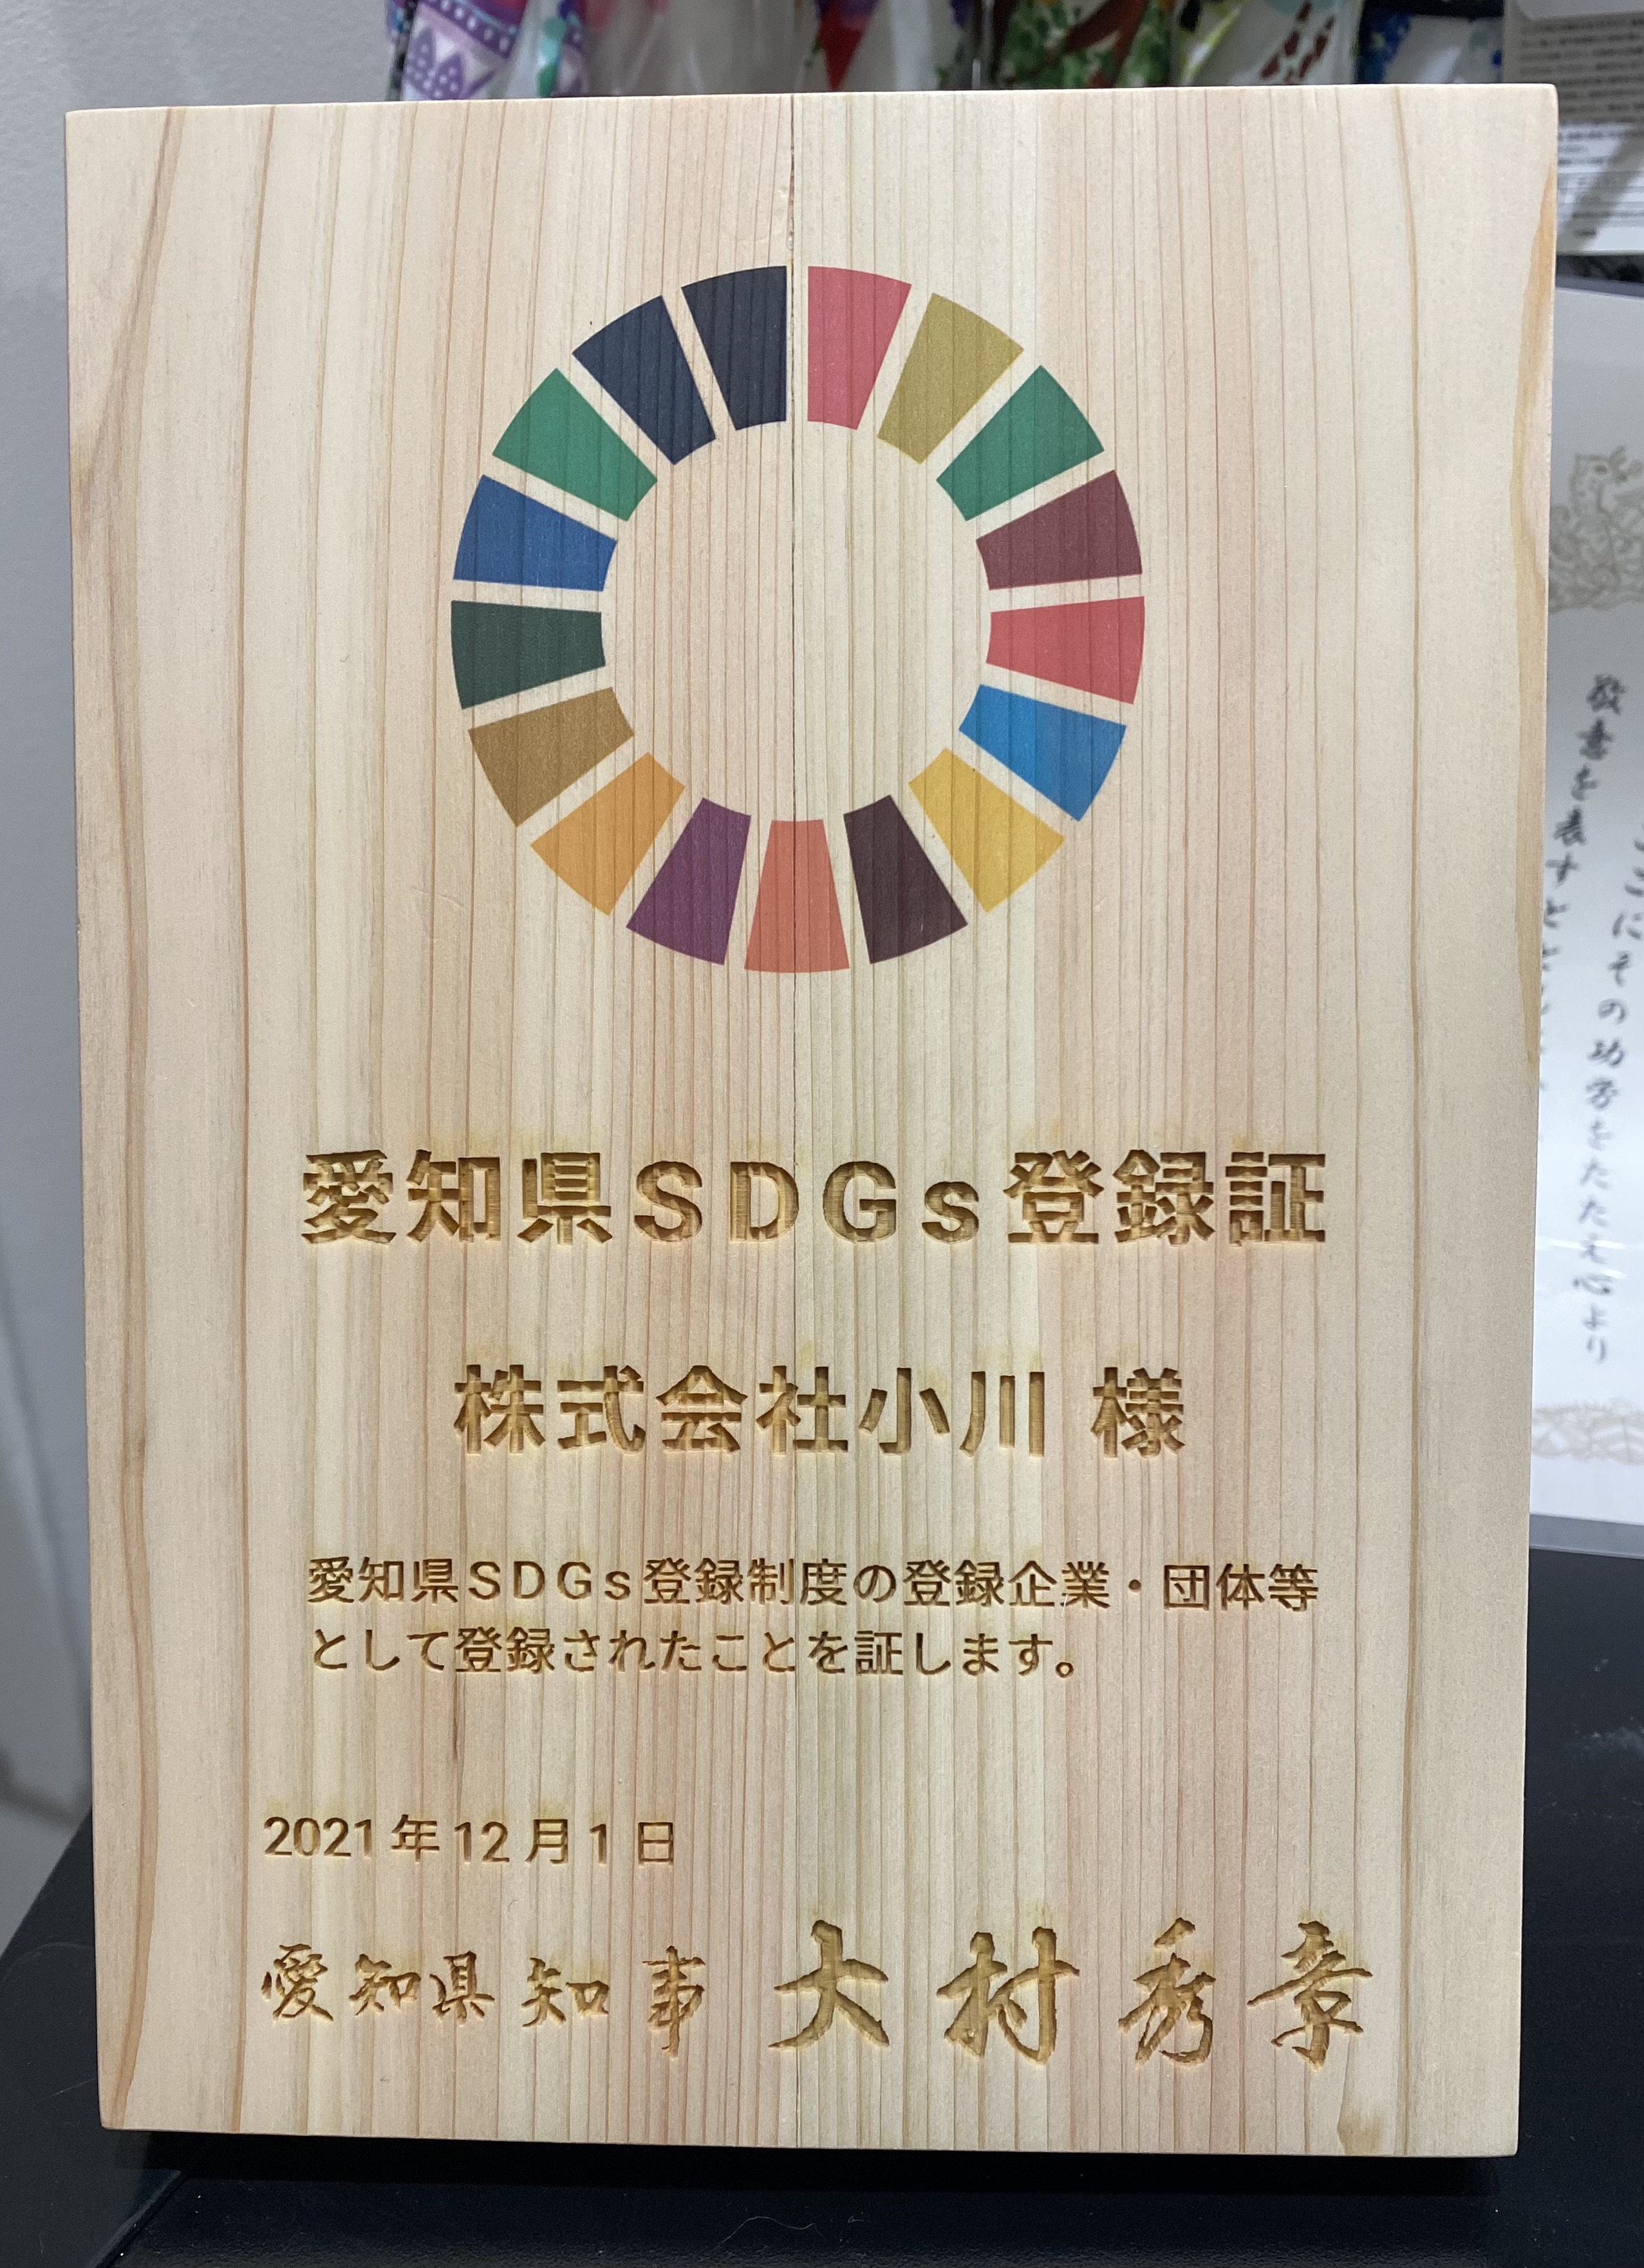 この度、「愛知県SDGs登録制度」に登録されました。